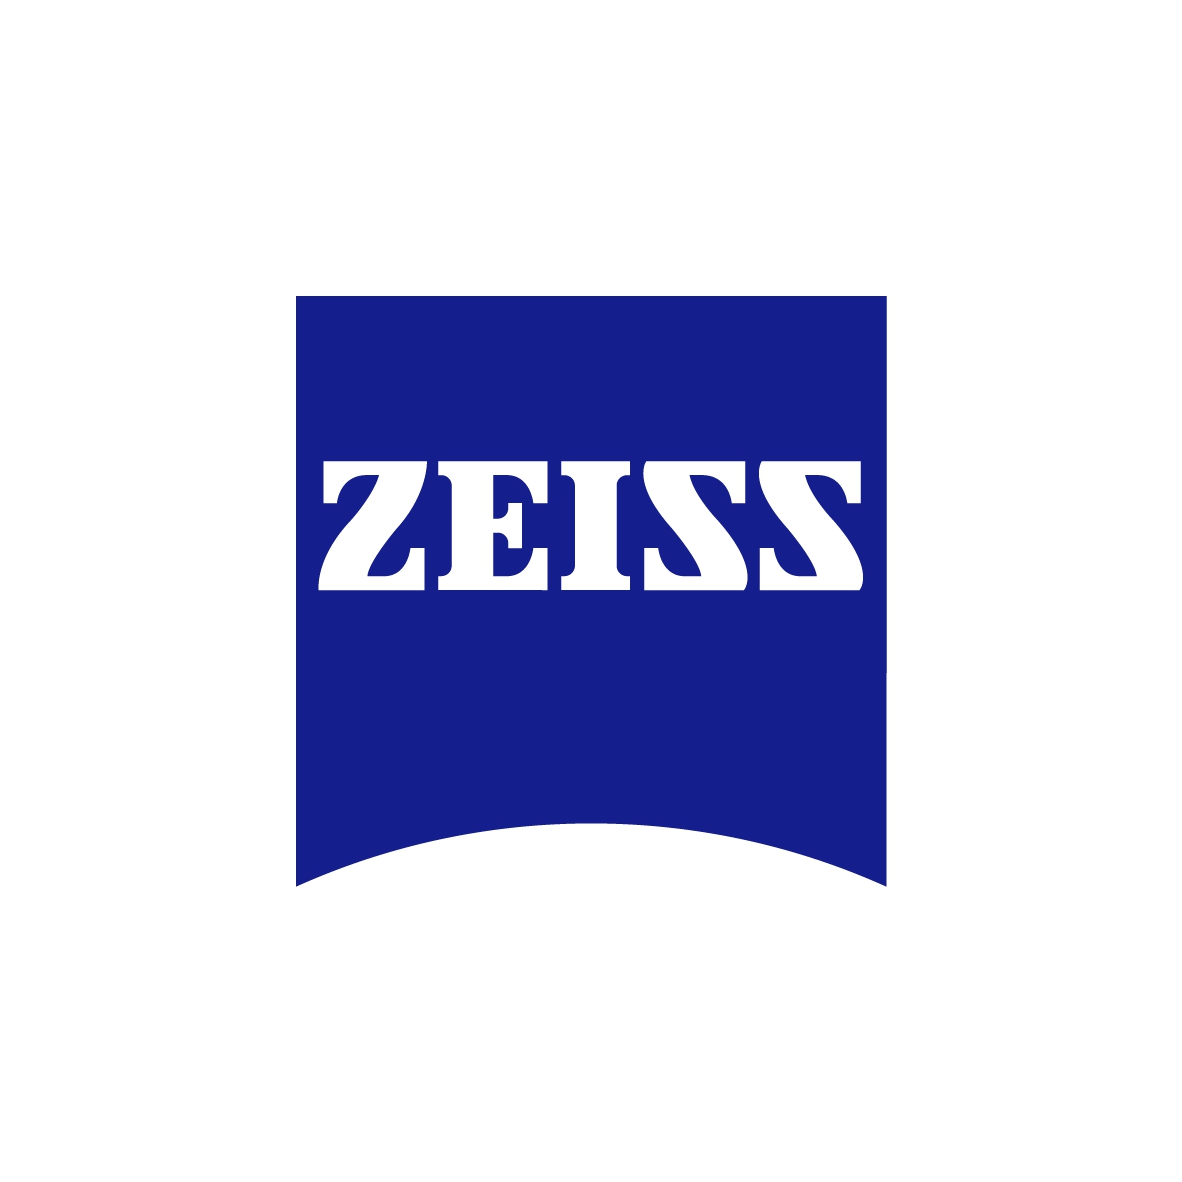 ZEISS Logo